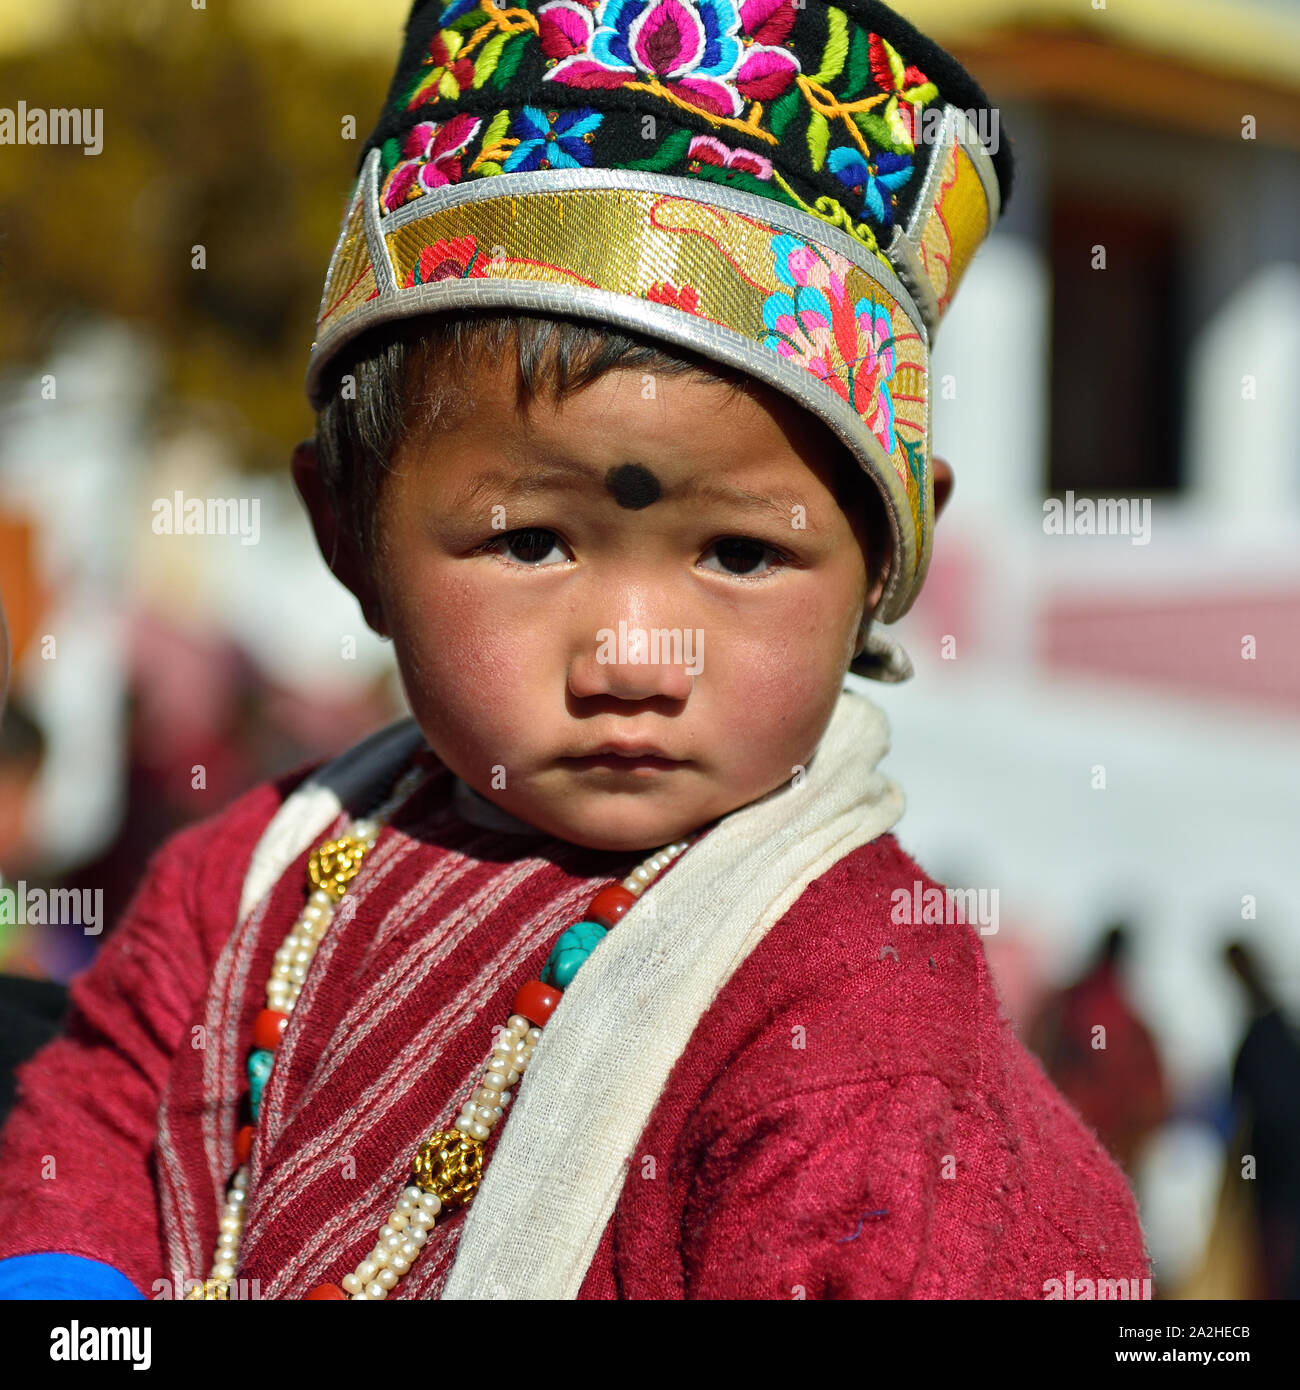 Tawang, Arunachal Pradesh, India - 04 de enero de 2019: Retrato del muchacho tybetan que está llevando el vestido tribal y el hermoso sombrero. Foto de stock